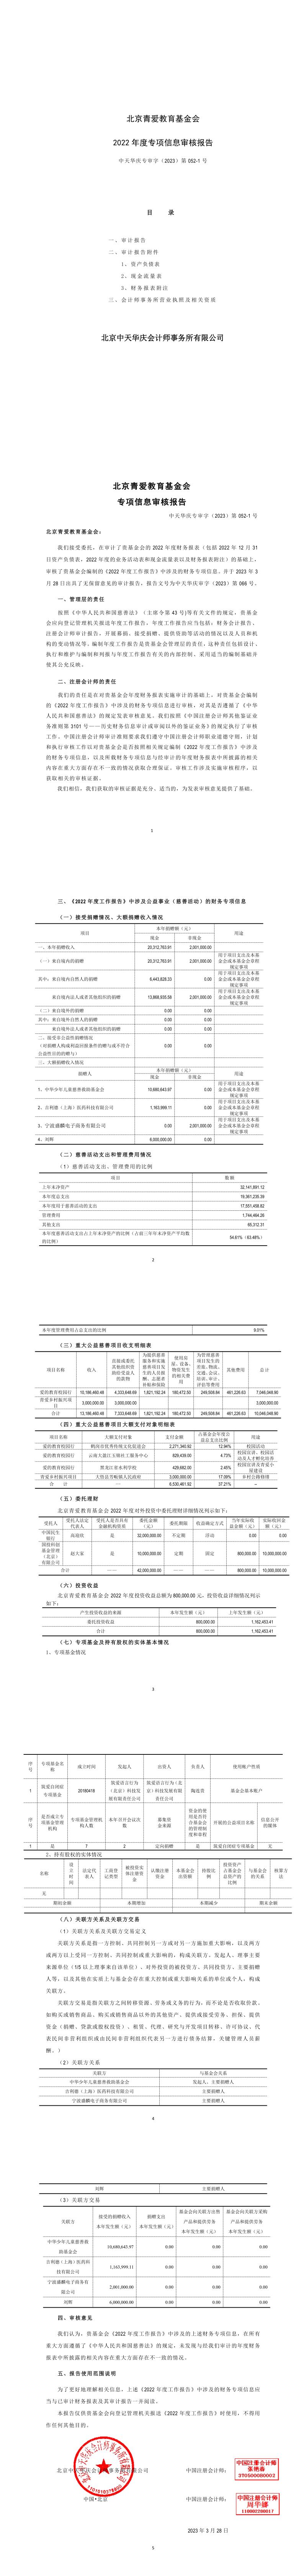 北京青爱教育基金会-专项信息审核报告_1_6